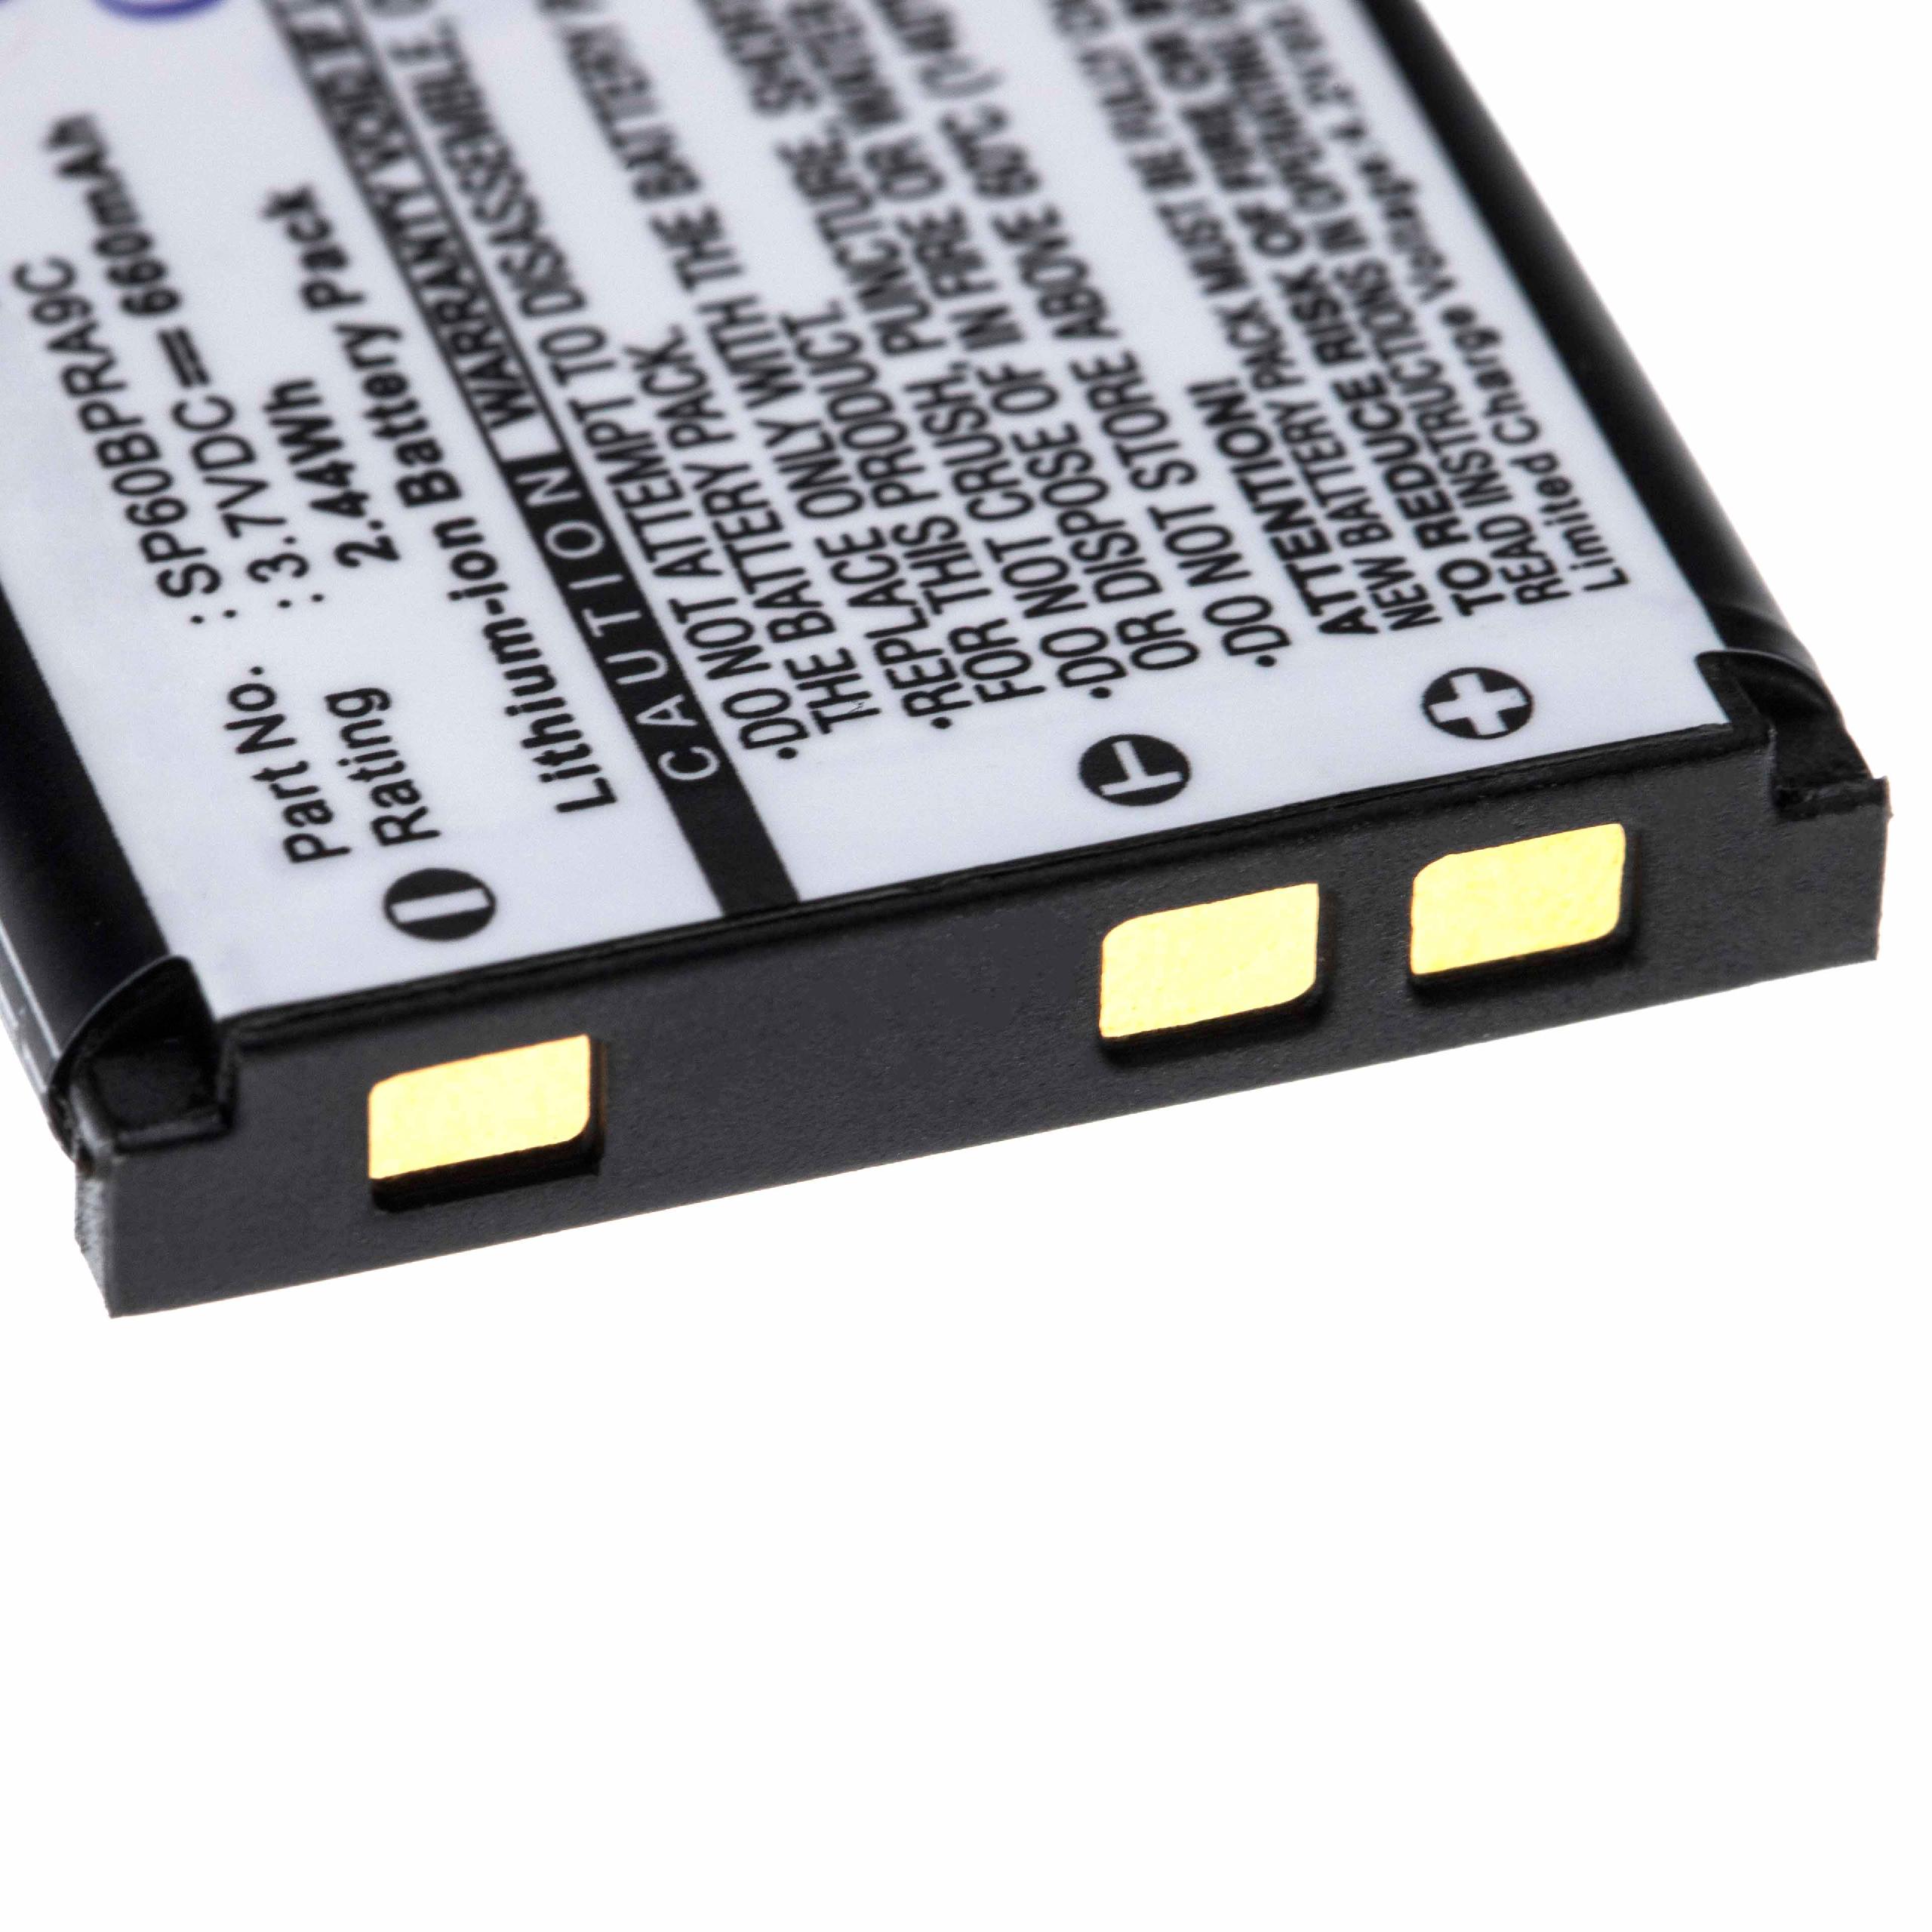 Batterie remplace BenQ DLI216 pour appareil photo - 660mAh 3,7V Li-ion